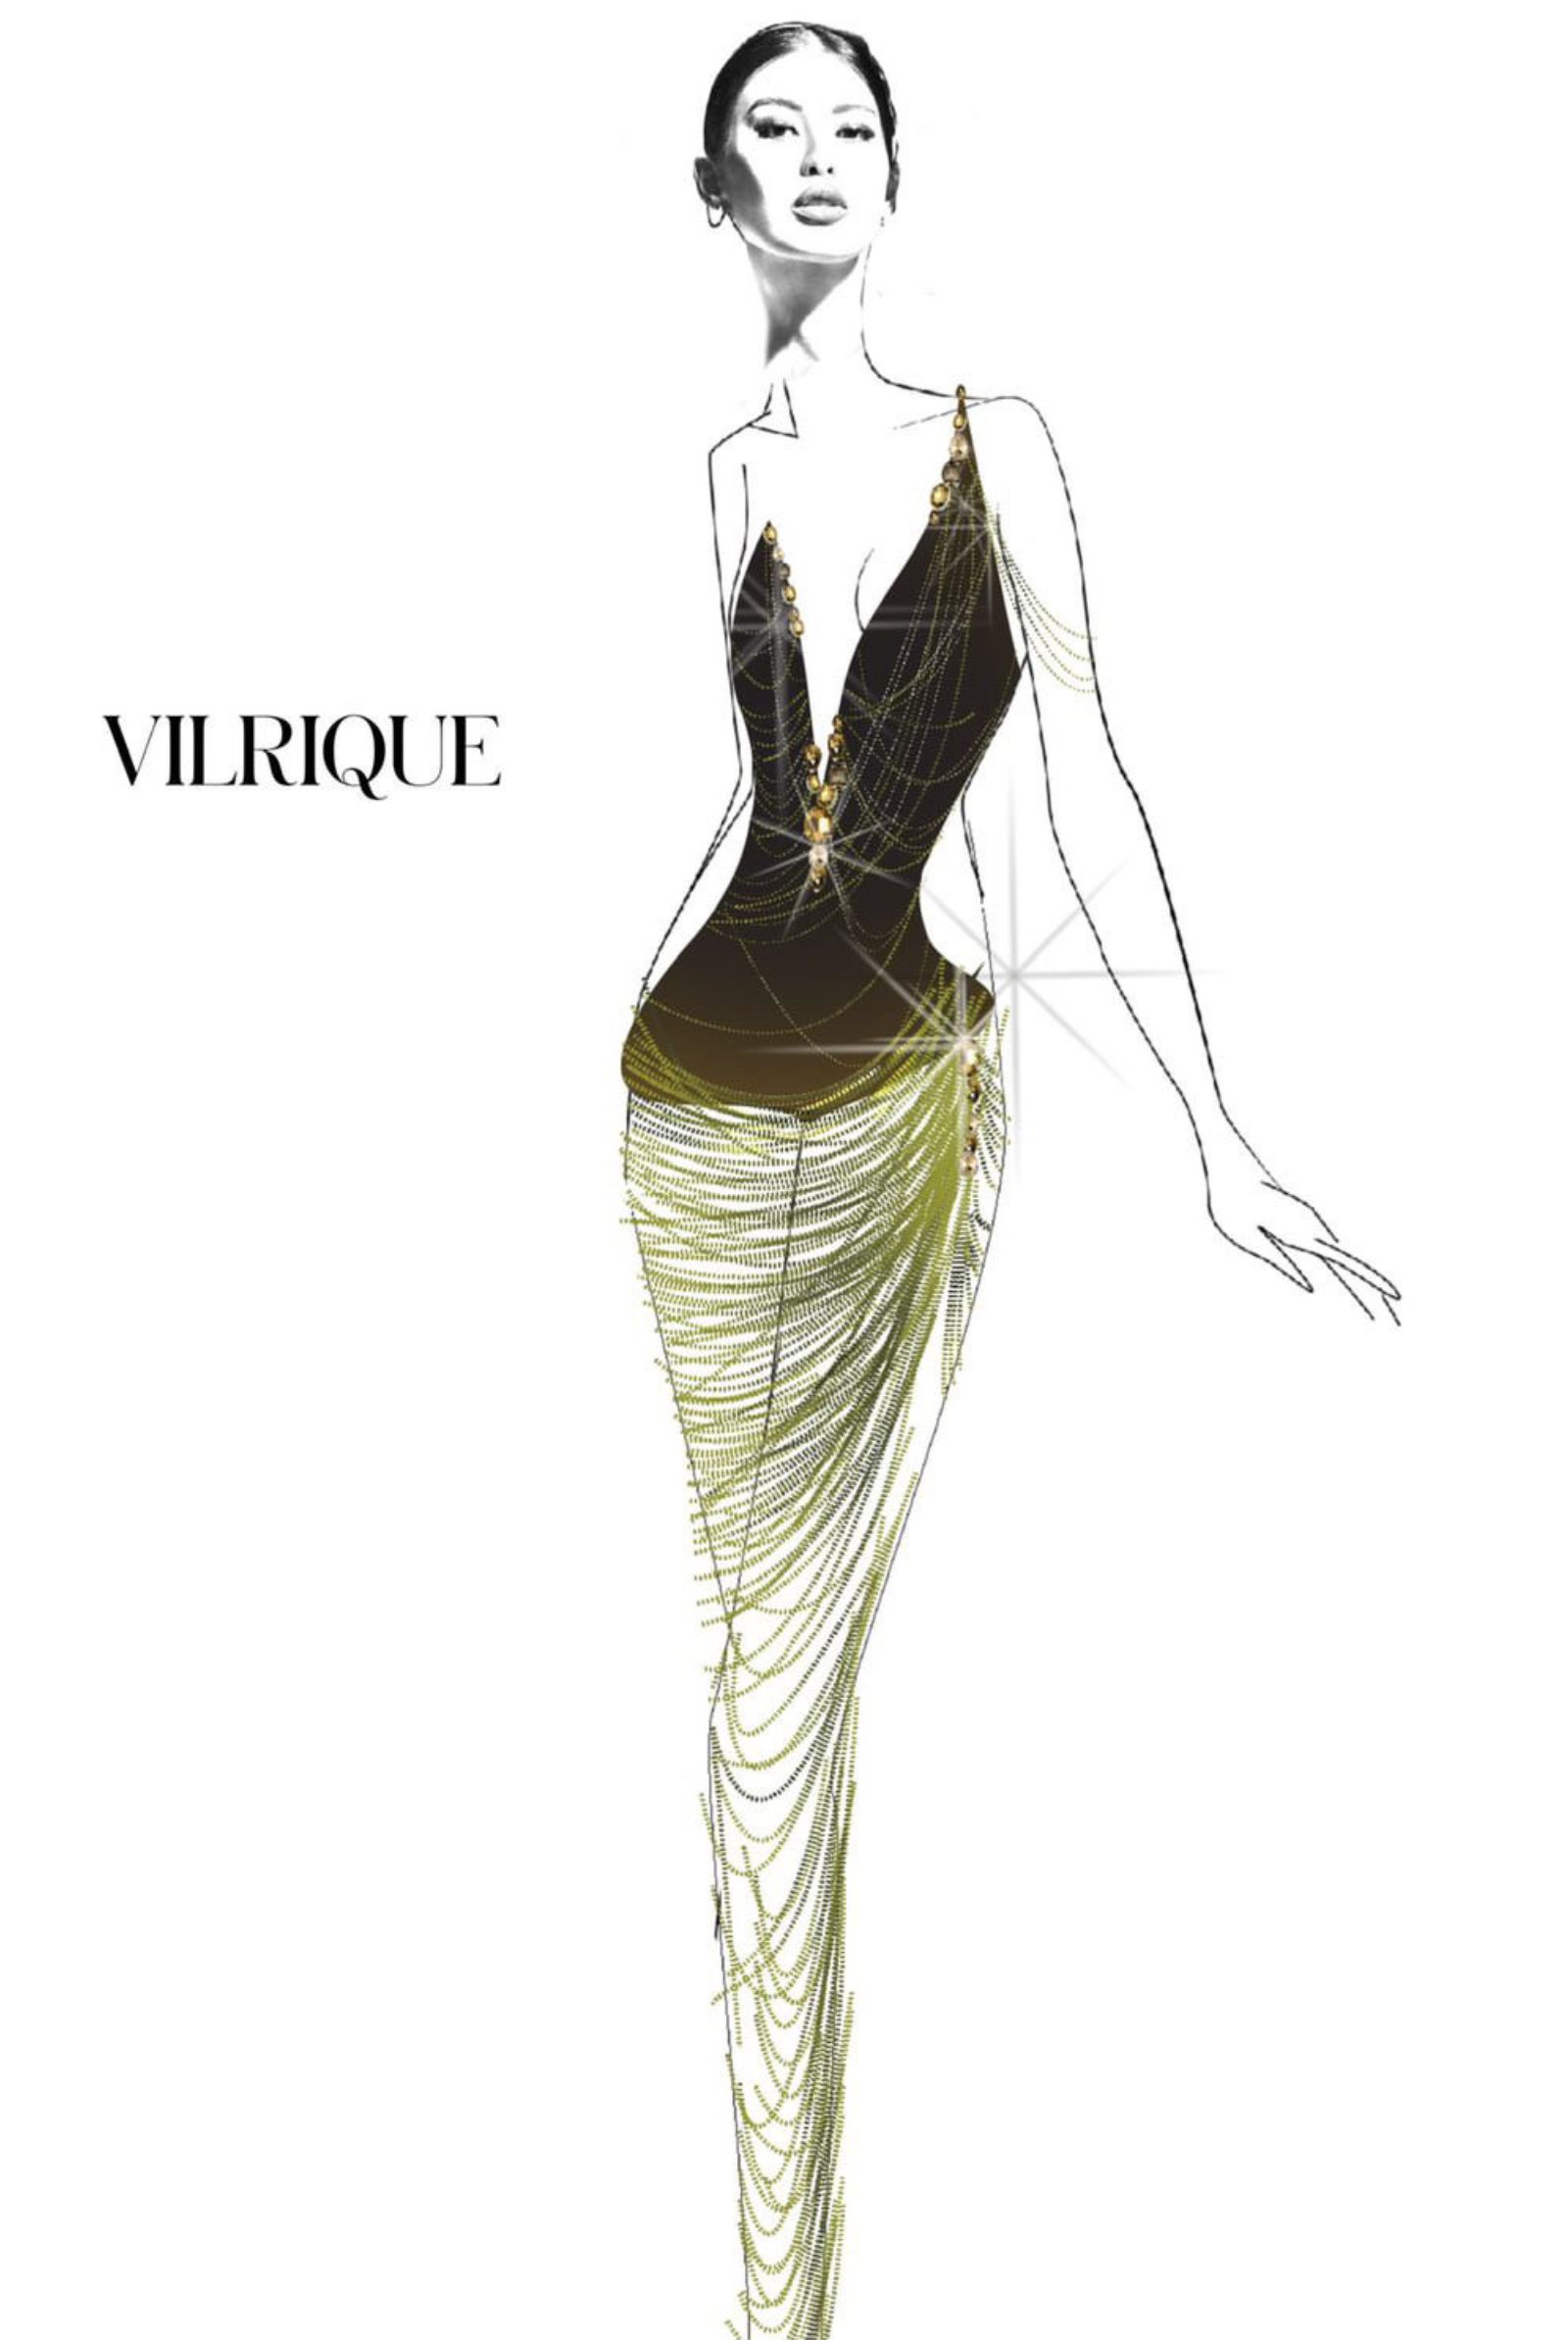 Vilrique Evening Gown sketch